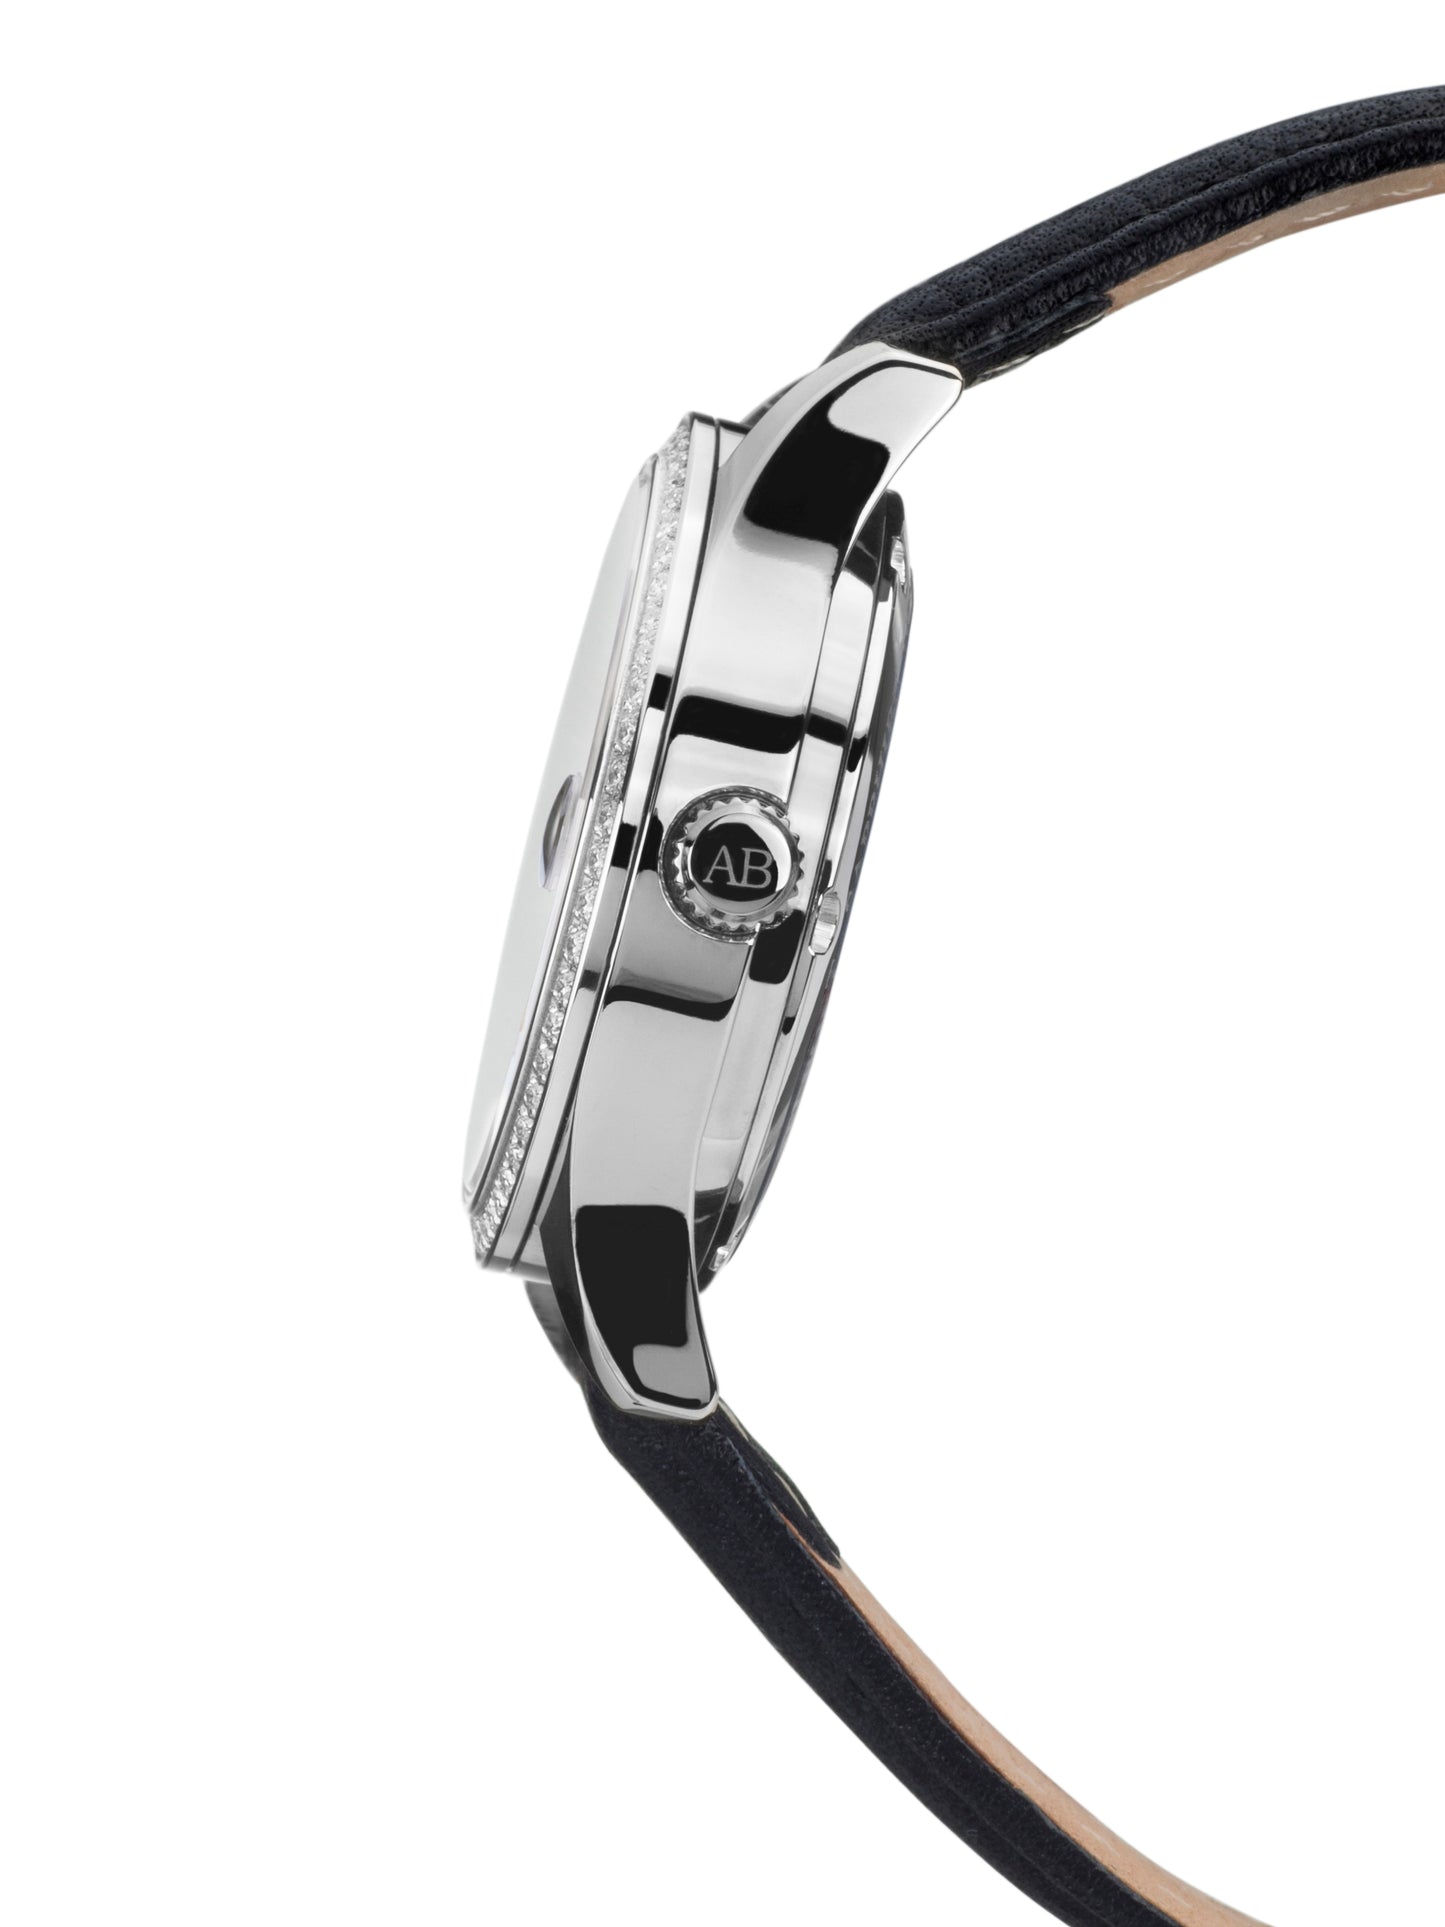 Automatic watches — Déméter — André Belfort — leather black